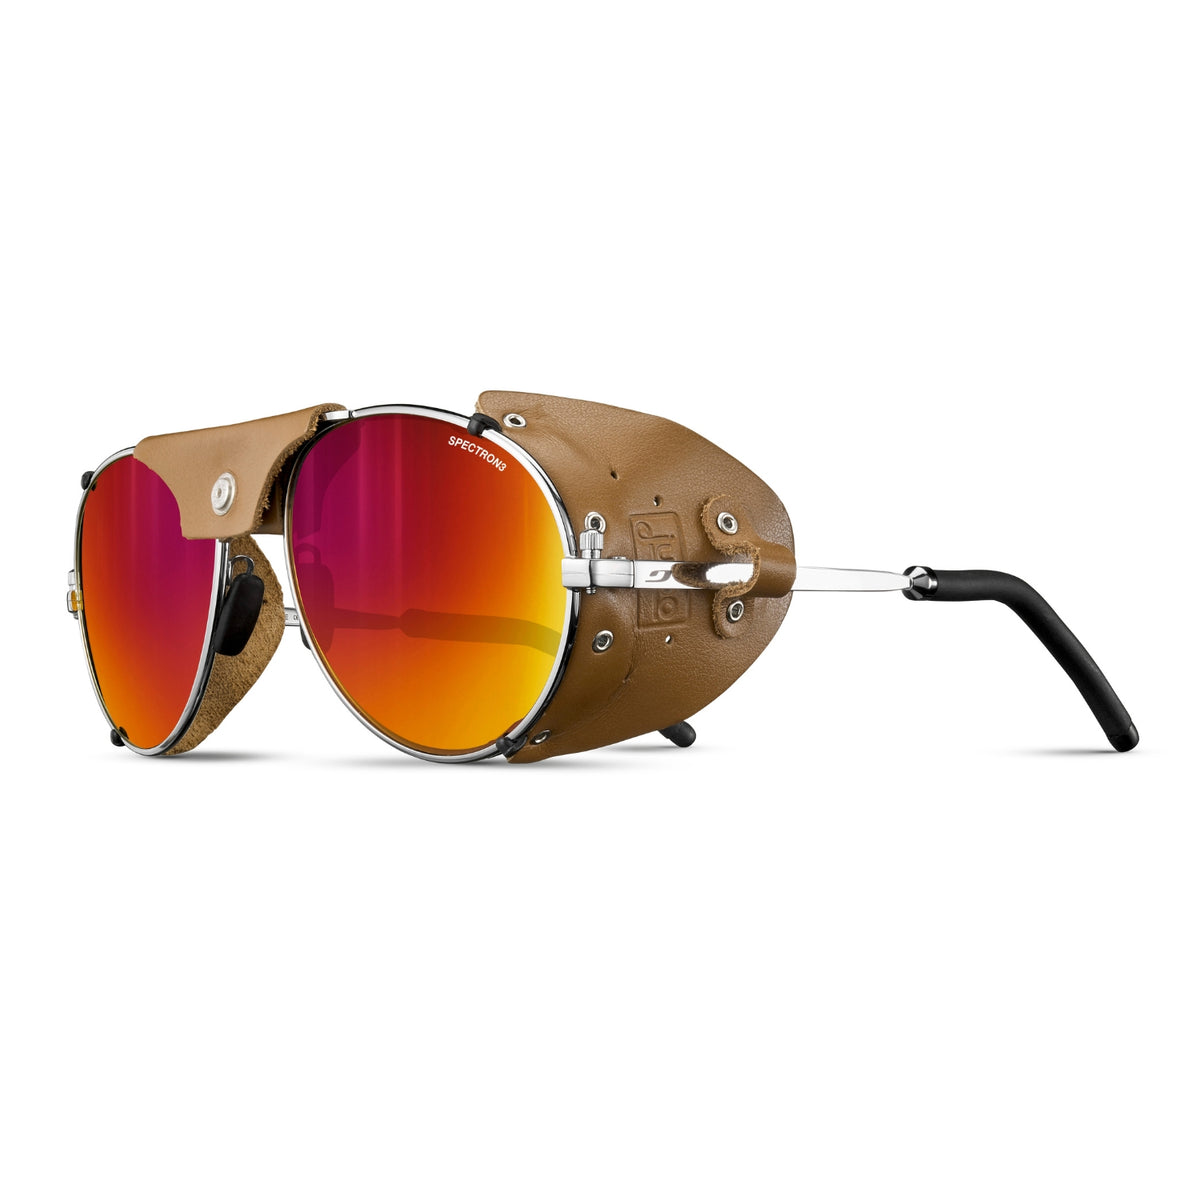 Julbo Cham SPECTRON 3CF sunglasses in silver/havana colour